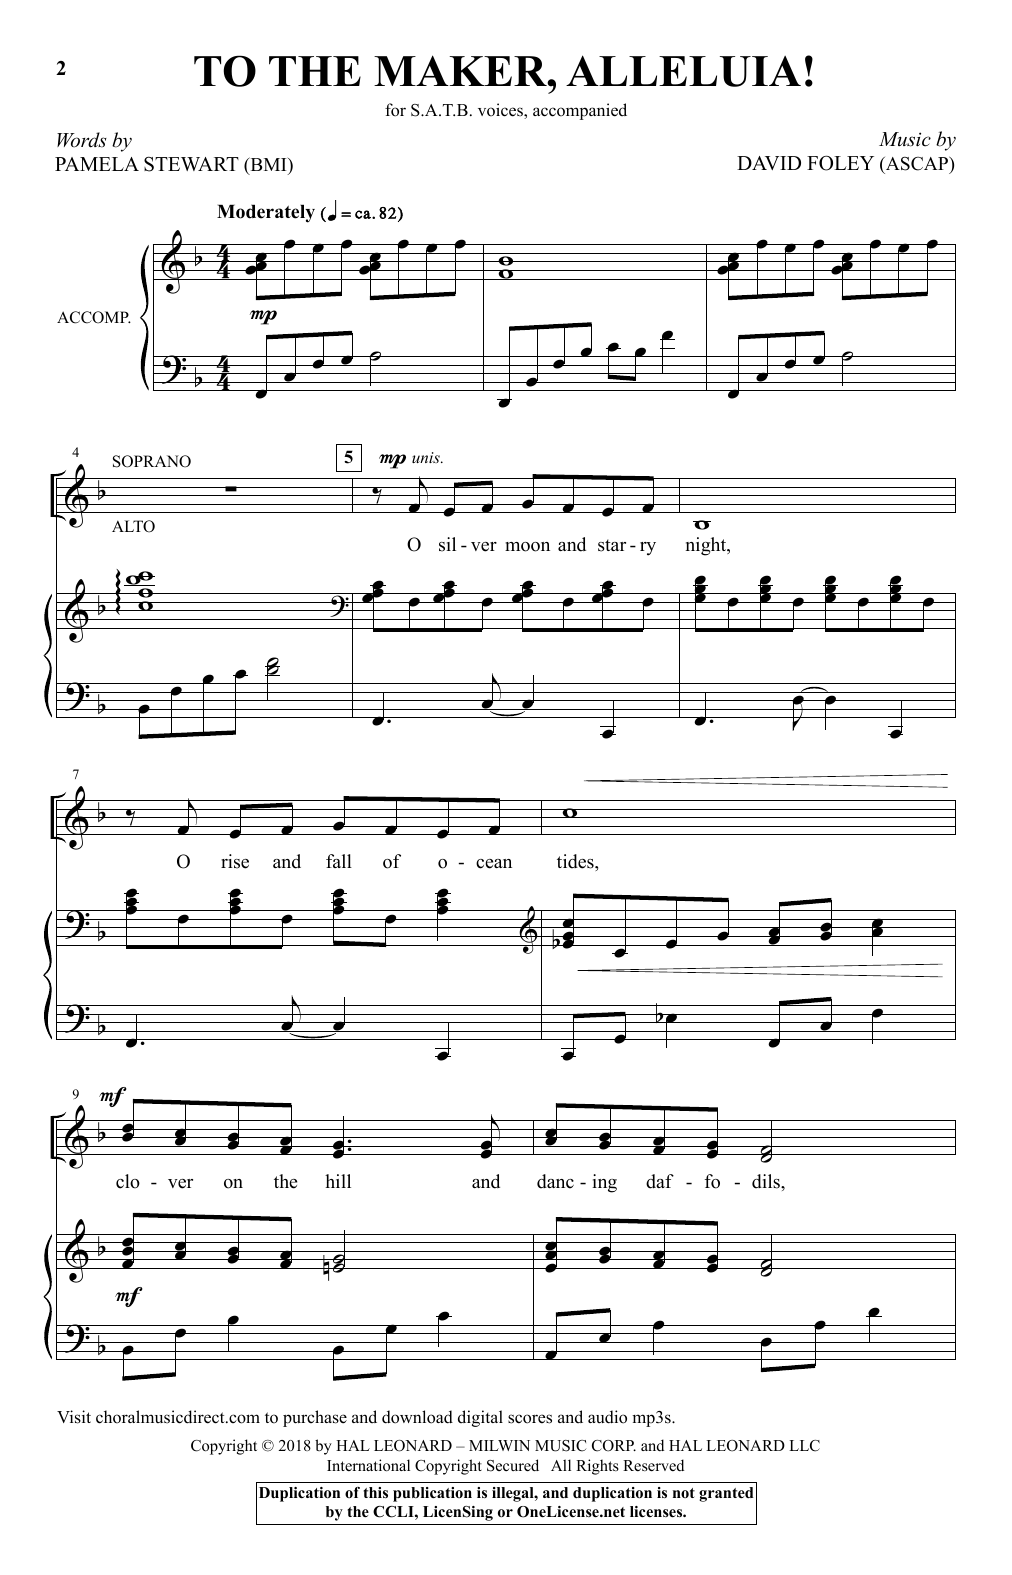 To The Maker, Alleluia! (SATB Choir) von David Foley